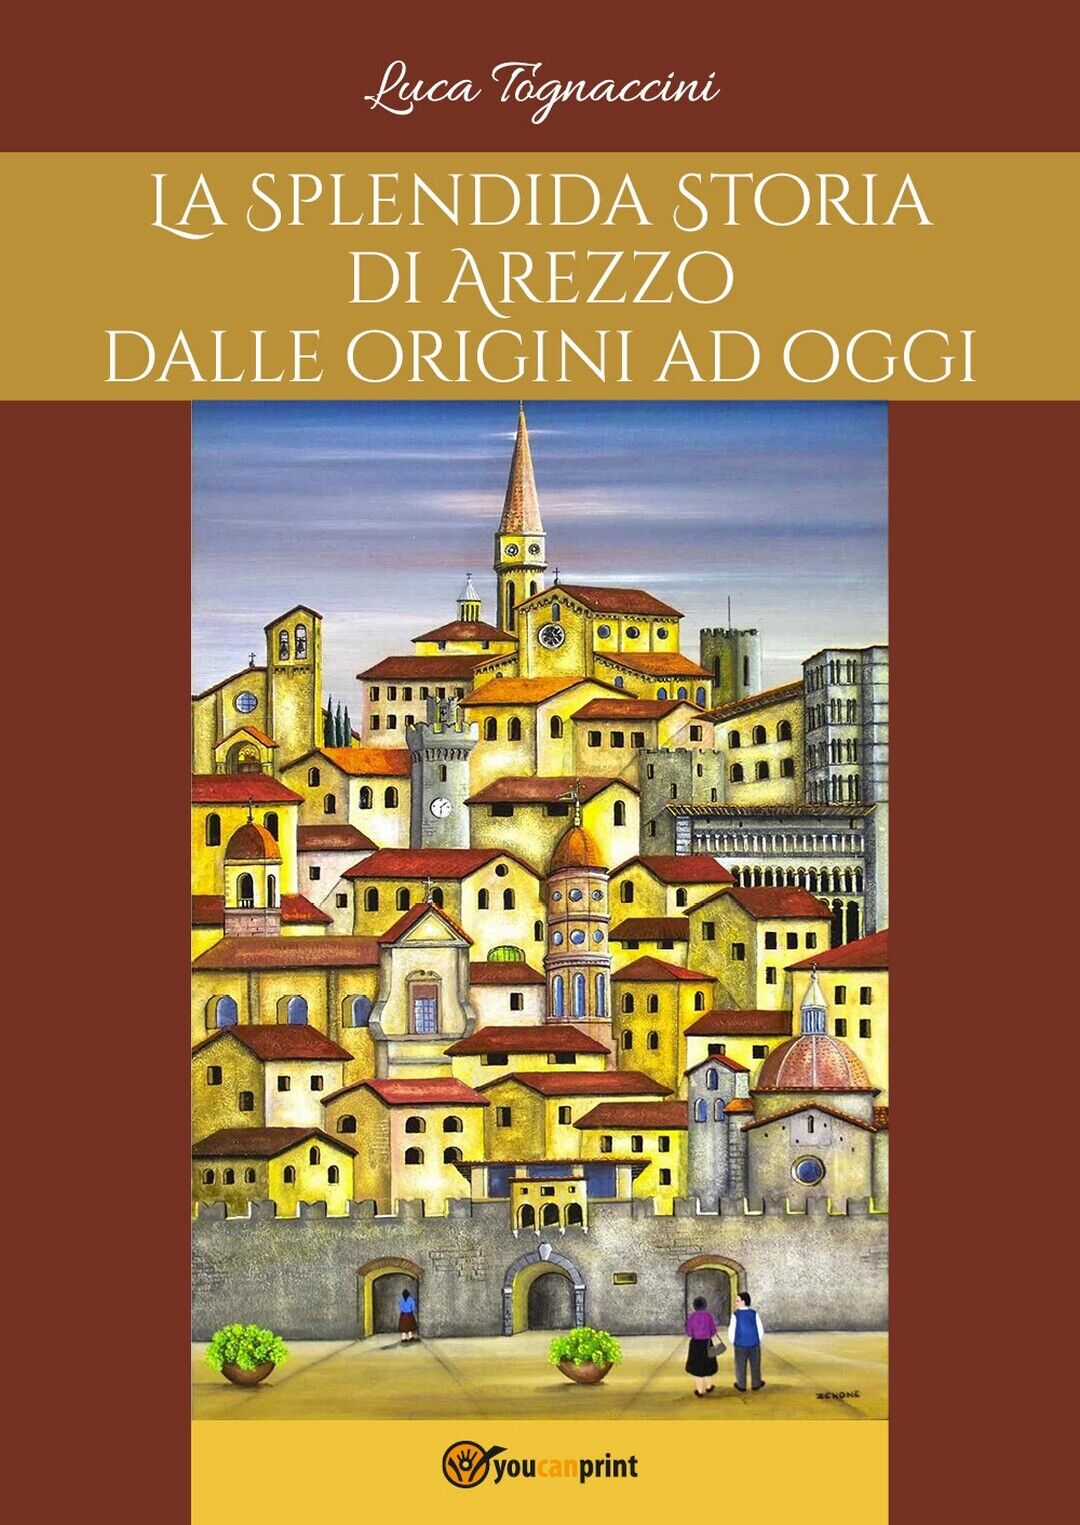 La Splendida Storia di Arezzo dalle origini ad oggi  di Luca Tognaccini,  2017 libro usato